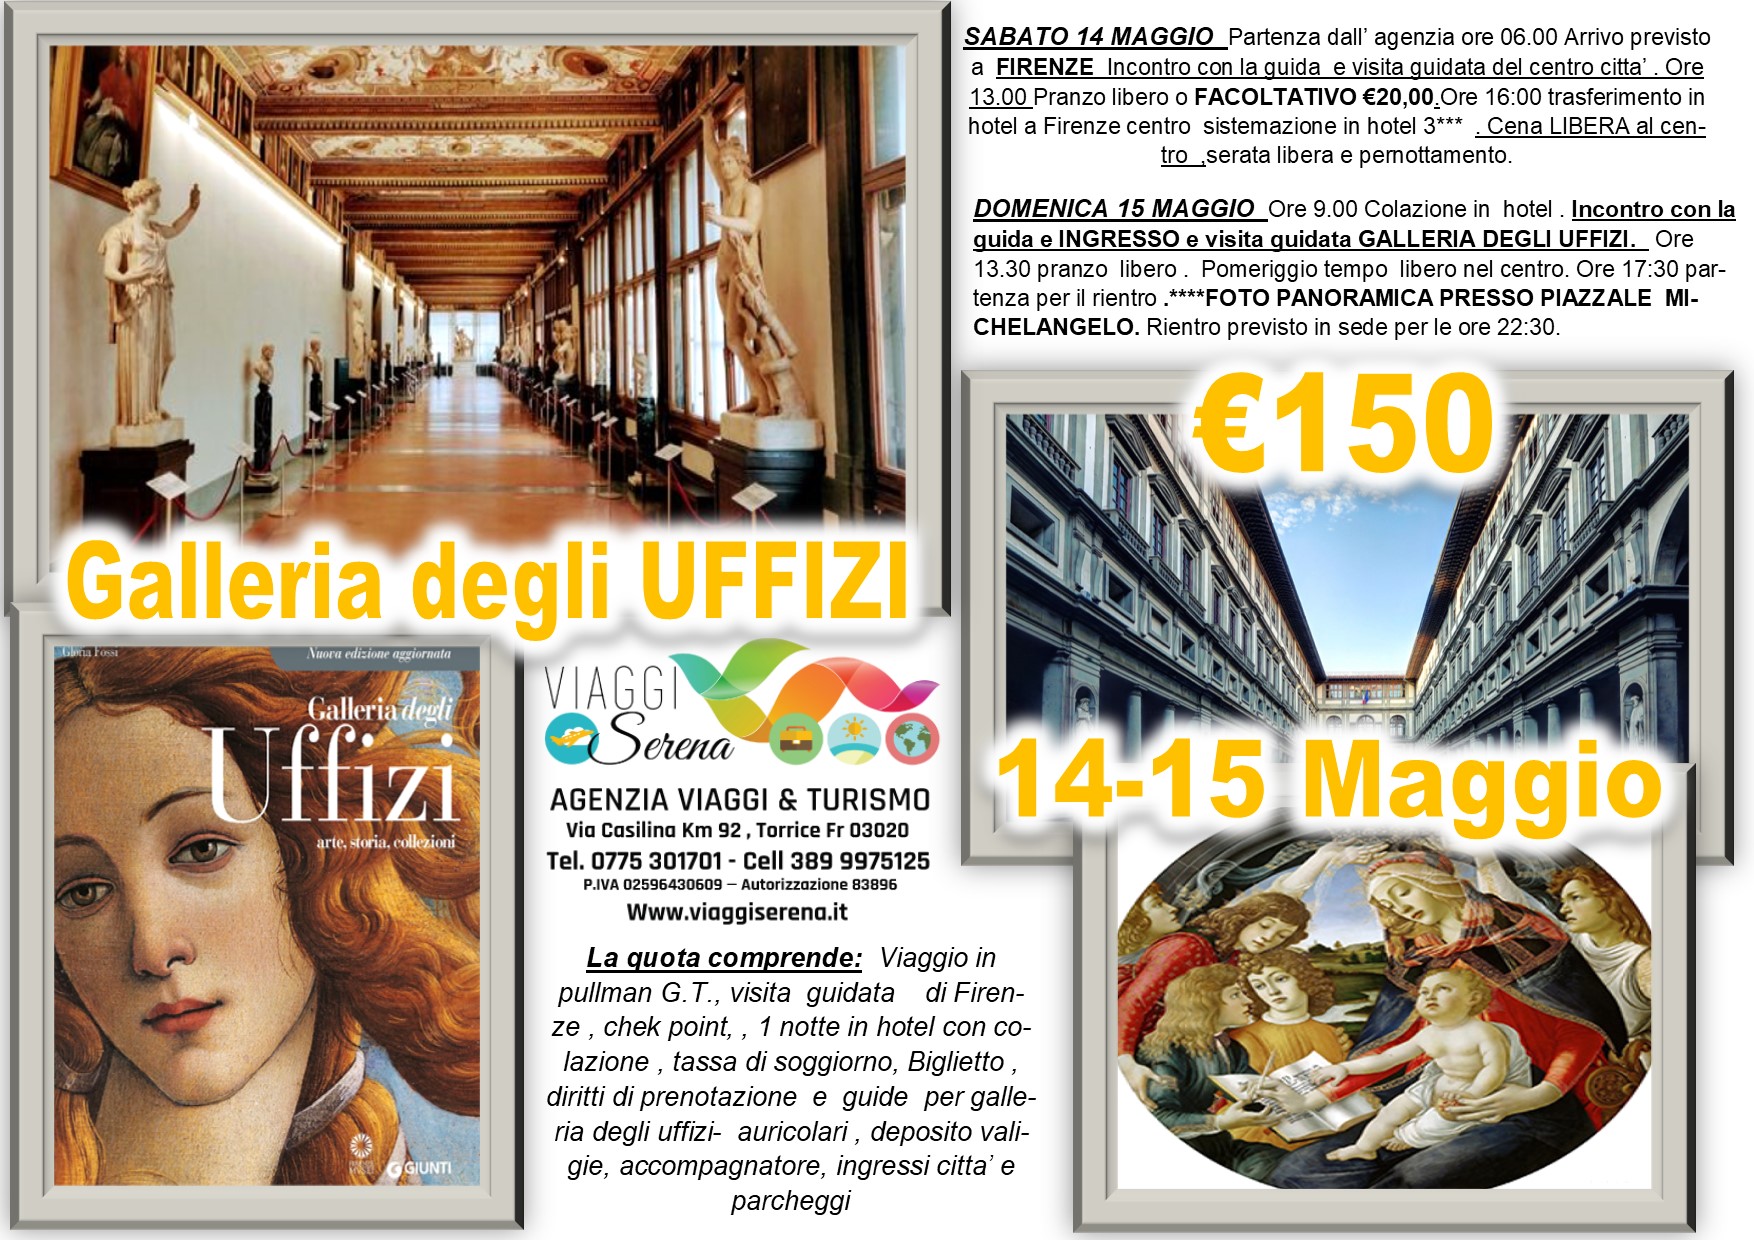 Viaggi di Gruppo: Galleria degli UFFIZI & Firenze 14-15 Maggio € 150,00